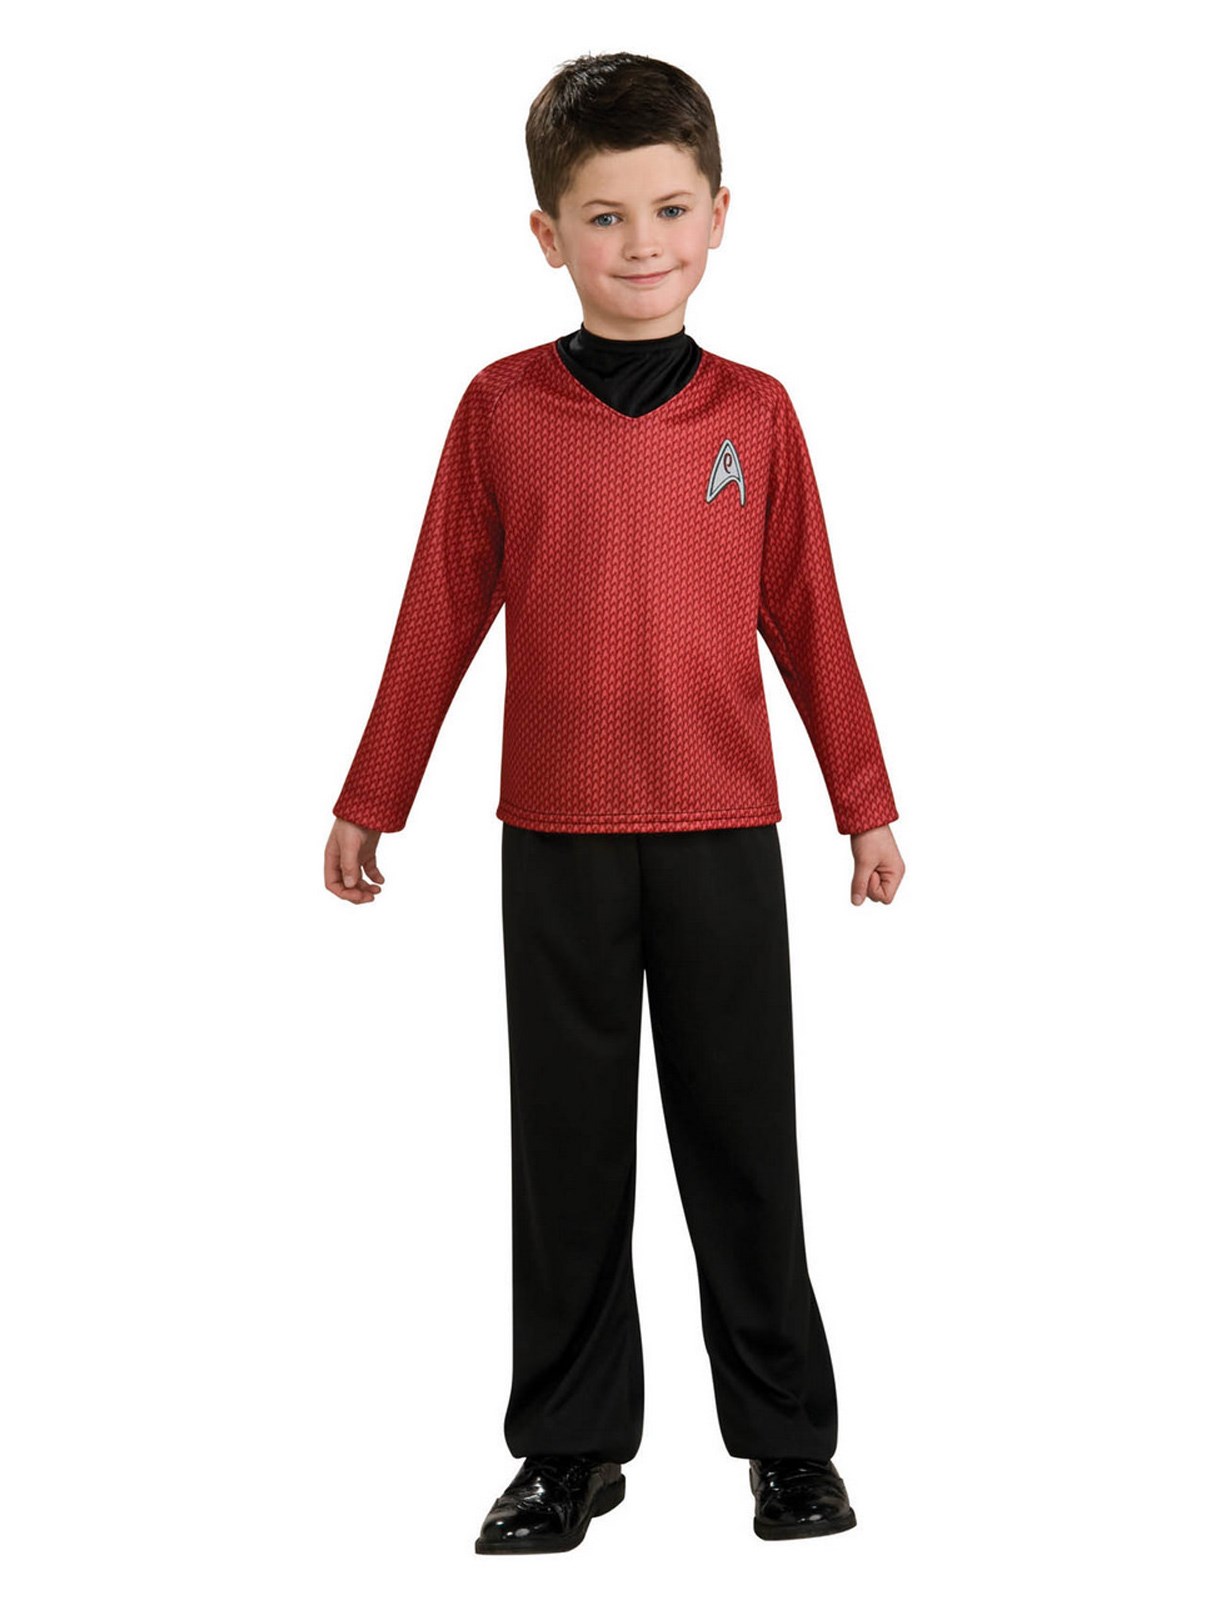 Star Trek Movie Red Shirt Child Costume